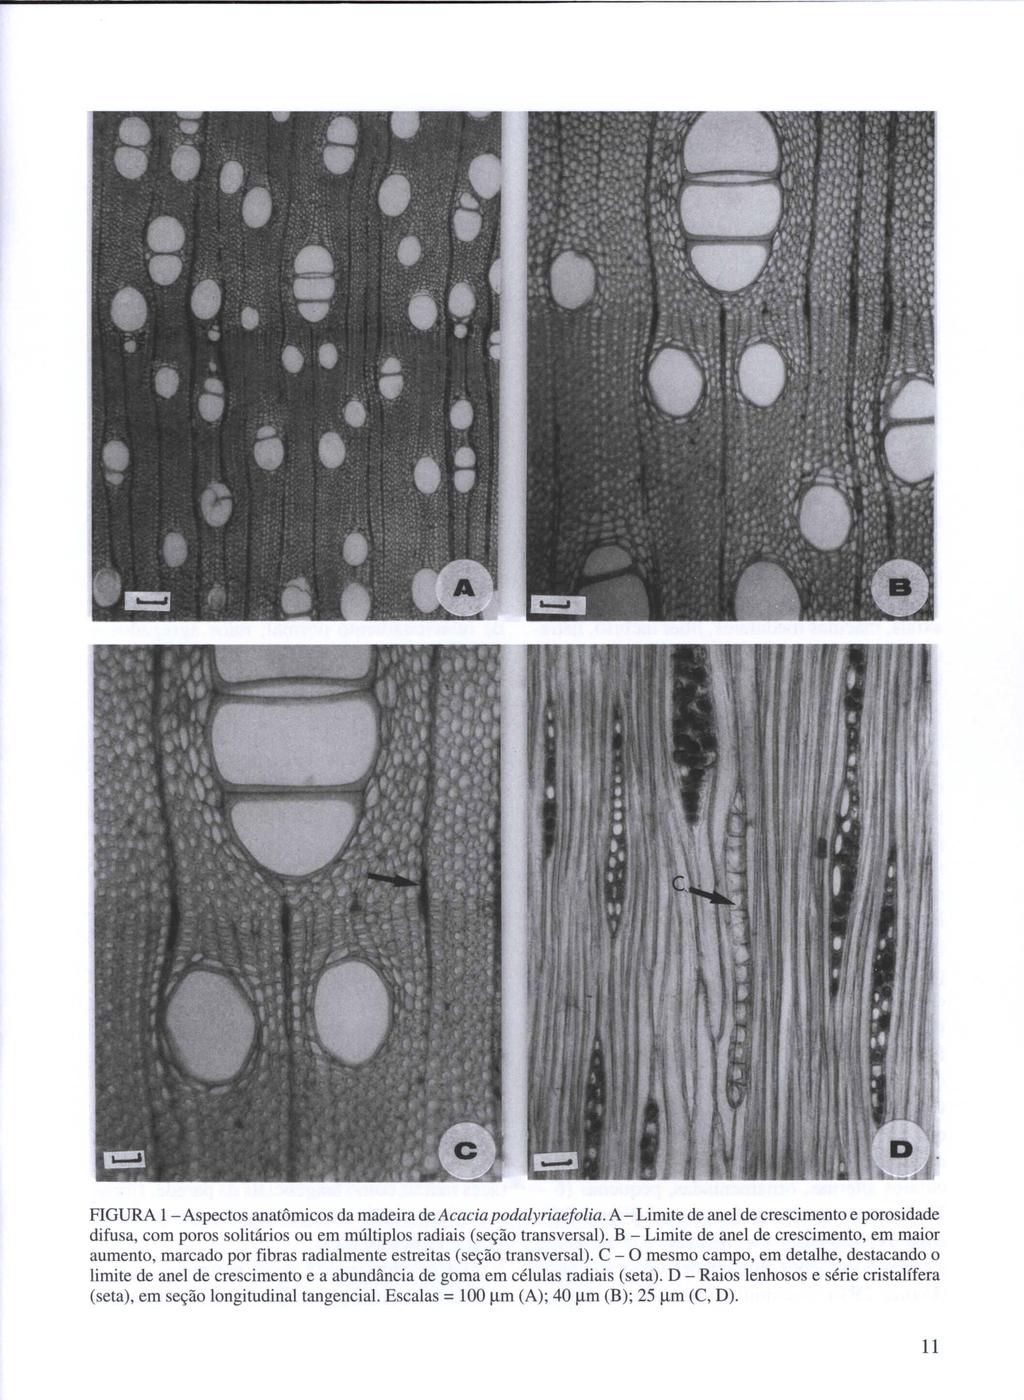 FIGURA I - Aspectos anatômicos da madeira de Acaeia podalyriaefolia. A - Limite de anel de crescimento e porosidade difusa, com poros solitários ou em múltiplos radiais (seção transversal).